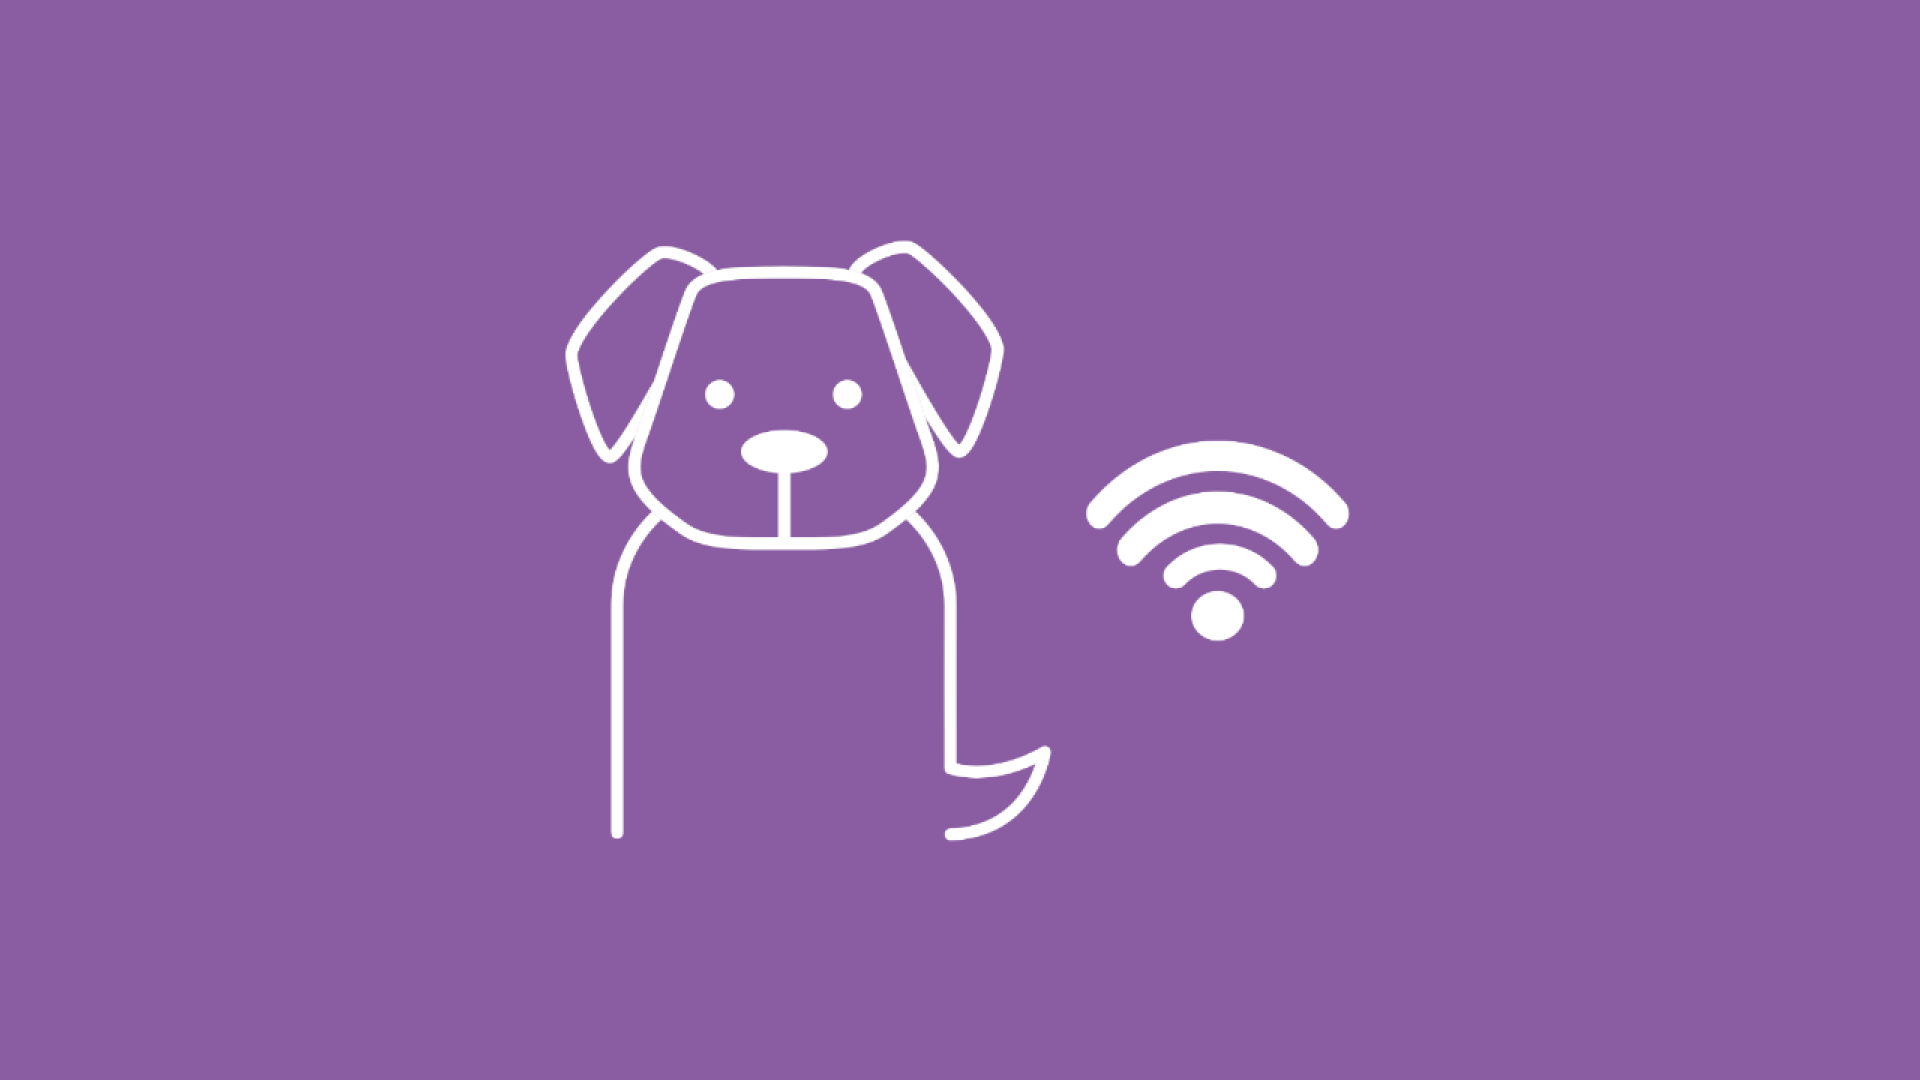 Die Grafik zeigt das WLAN-Symbol neben einem Hund, um zu symbolisieren, dass der Hund gechippt ist.